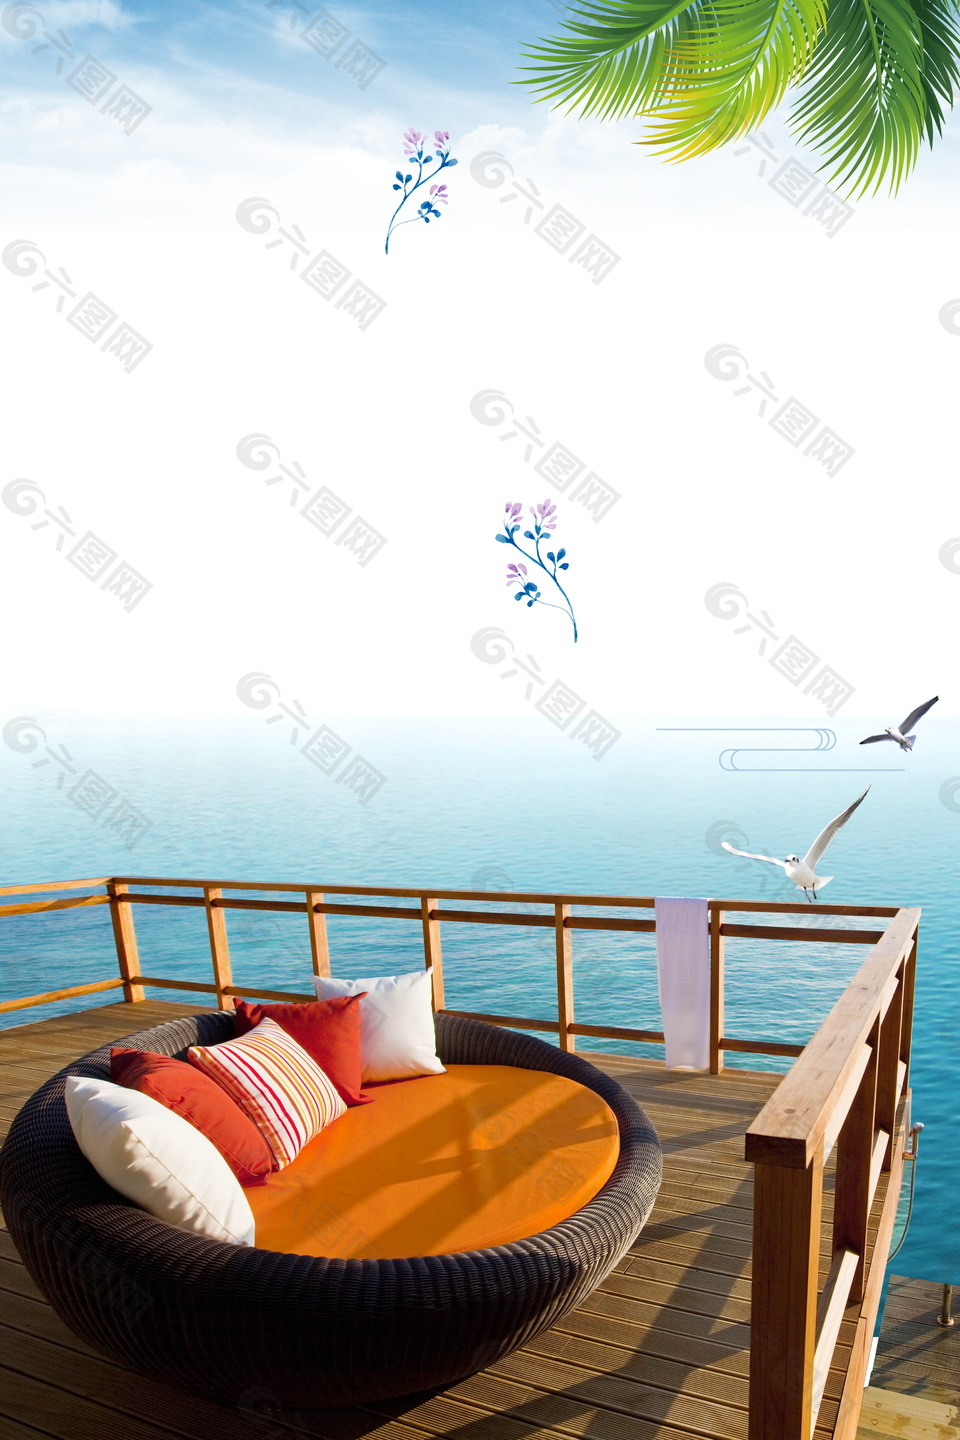 浪漫海之旅清新马尔代夫旅游广告背景素材